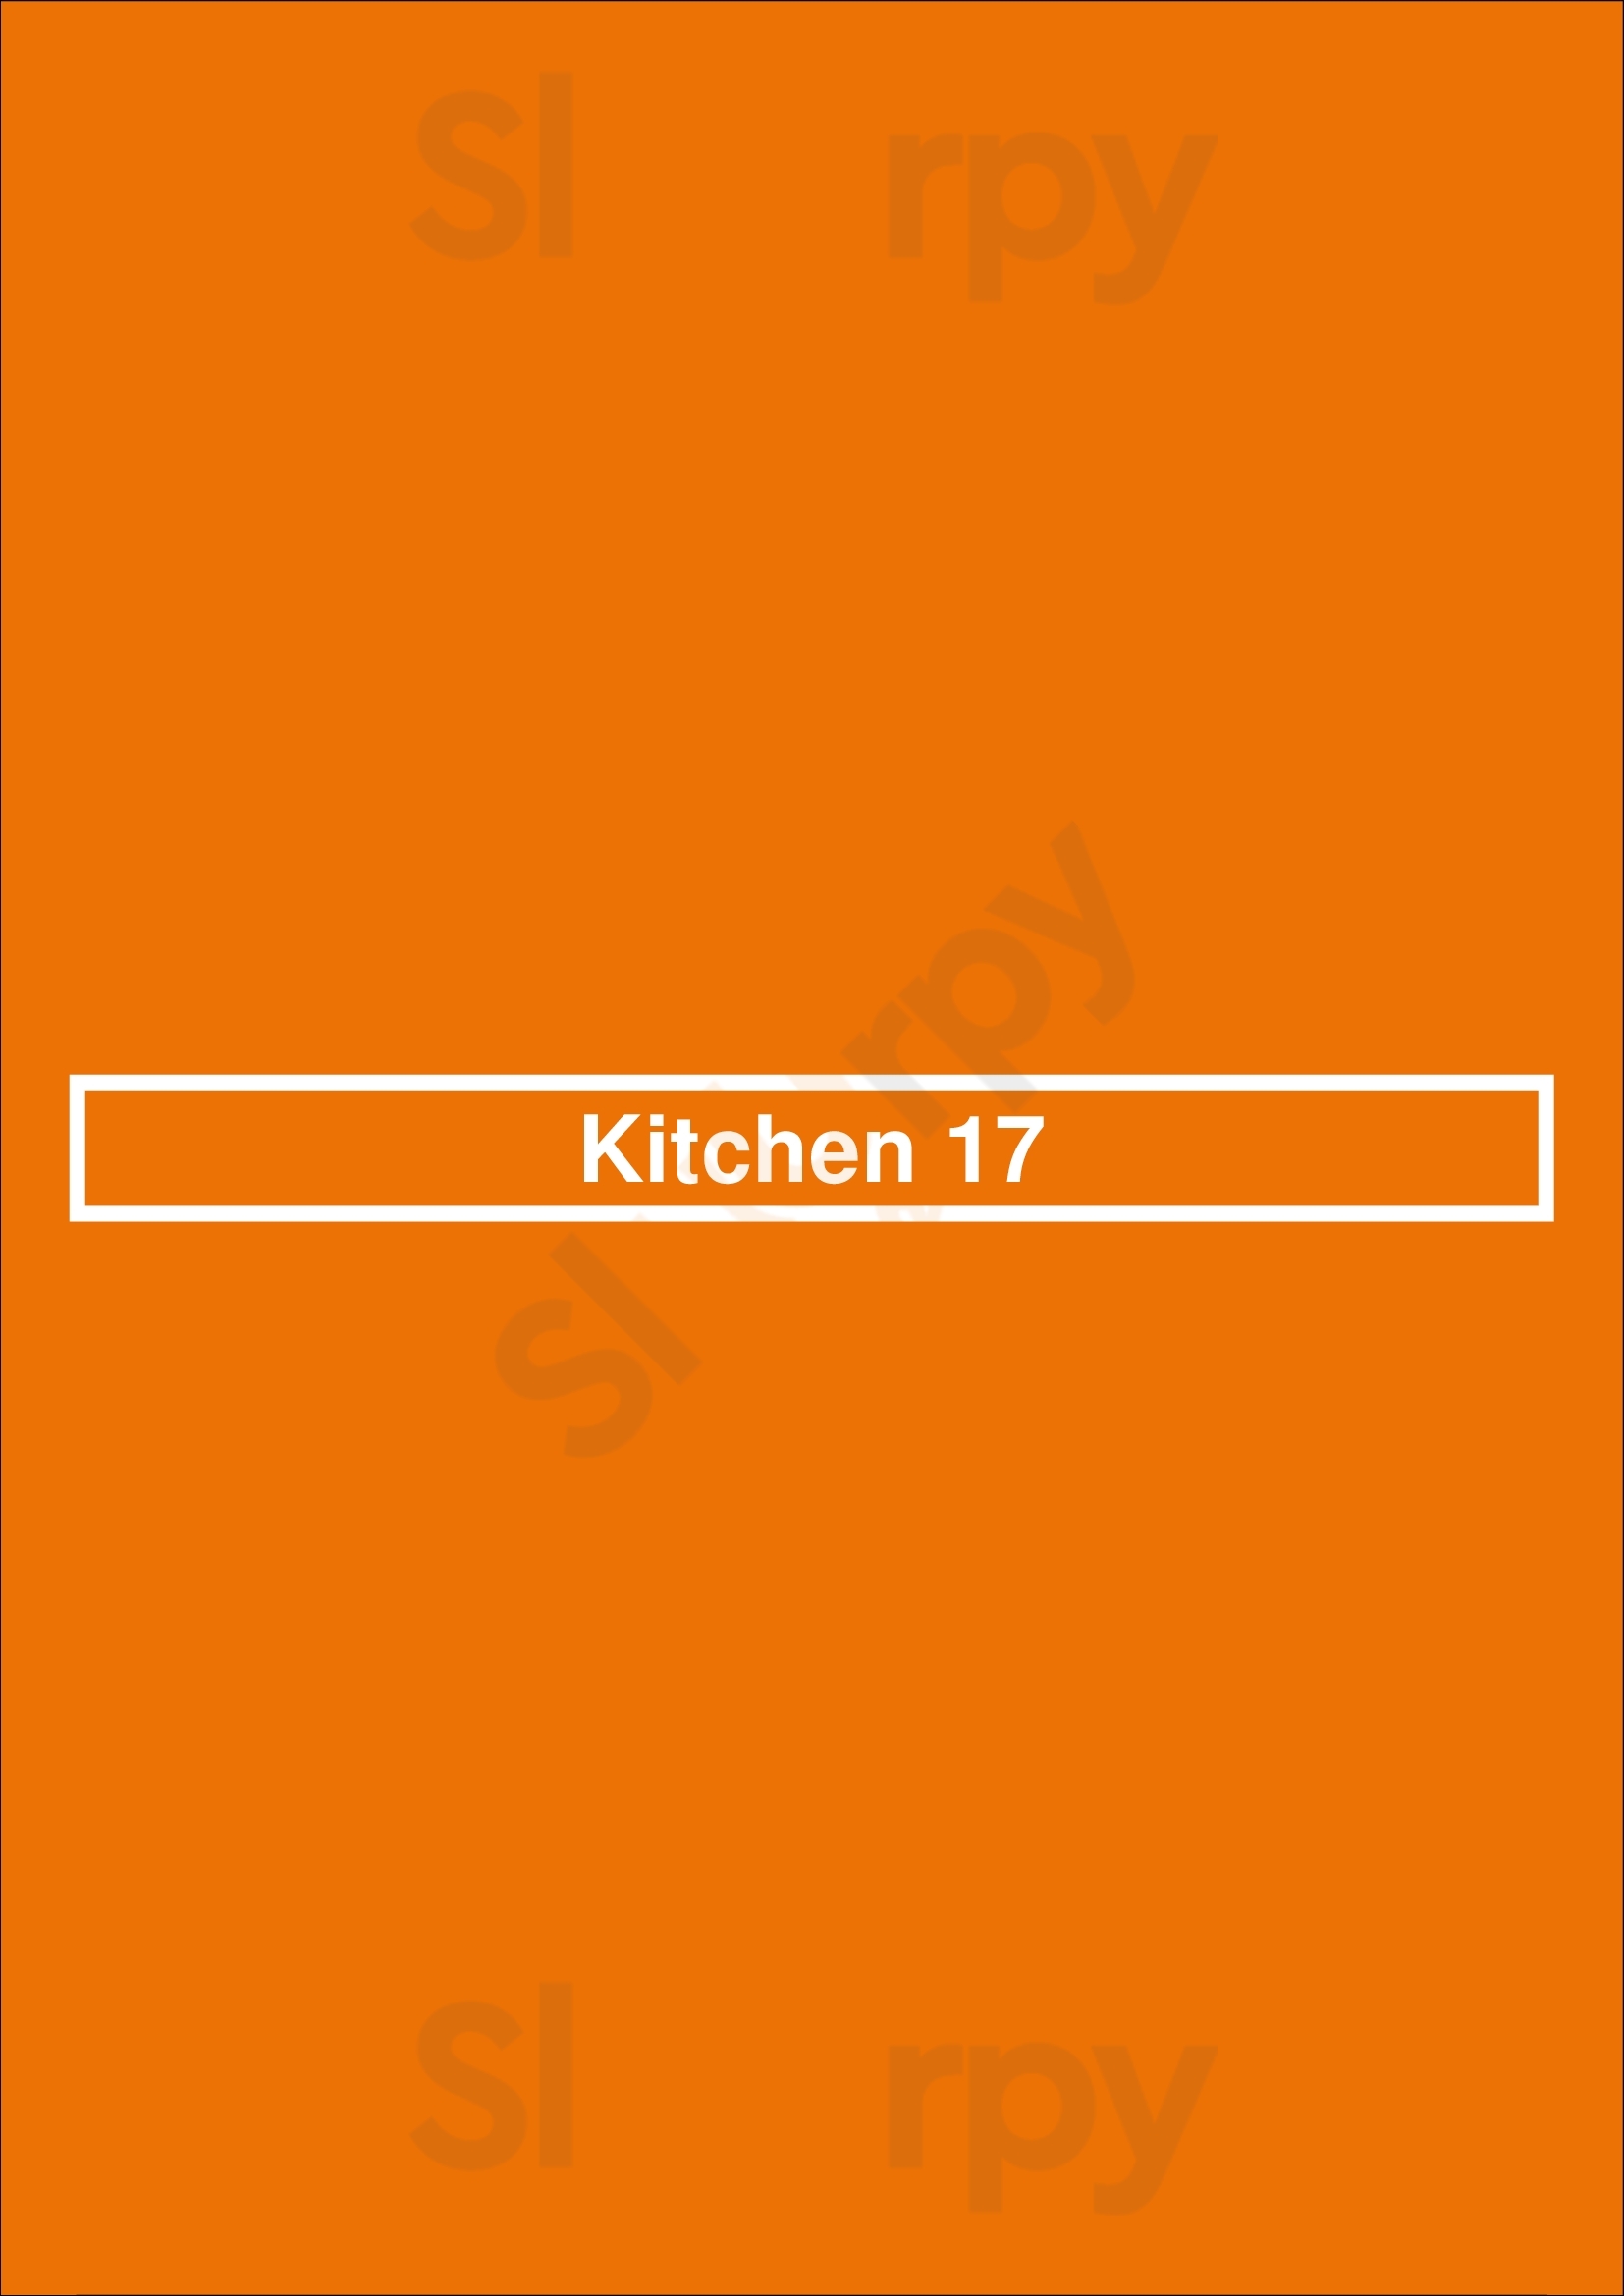 Kitchen 17 Chicago Menu - 1